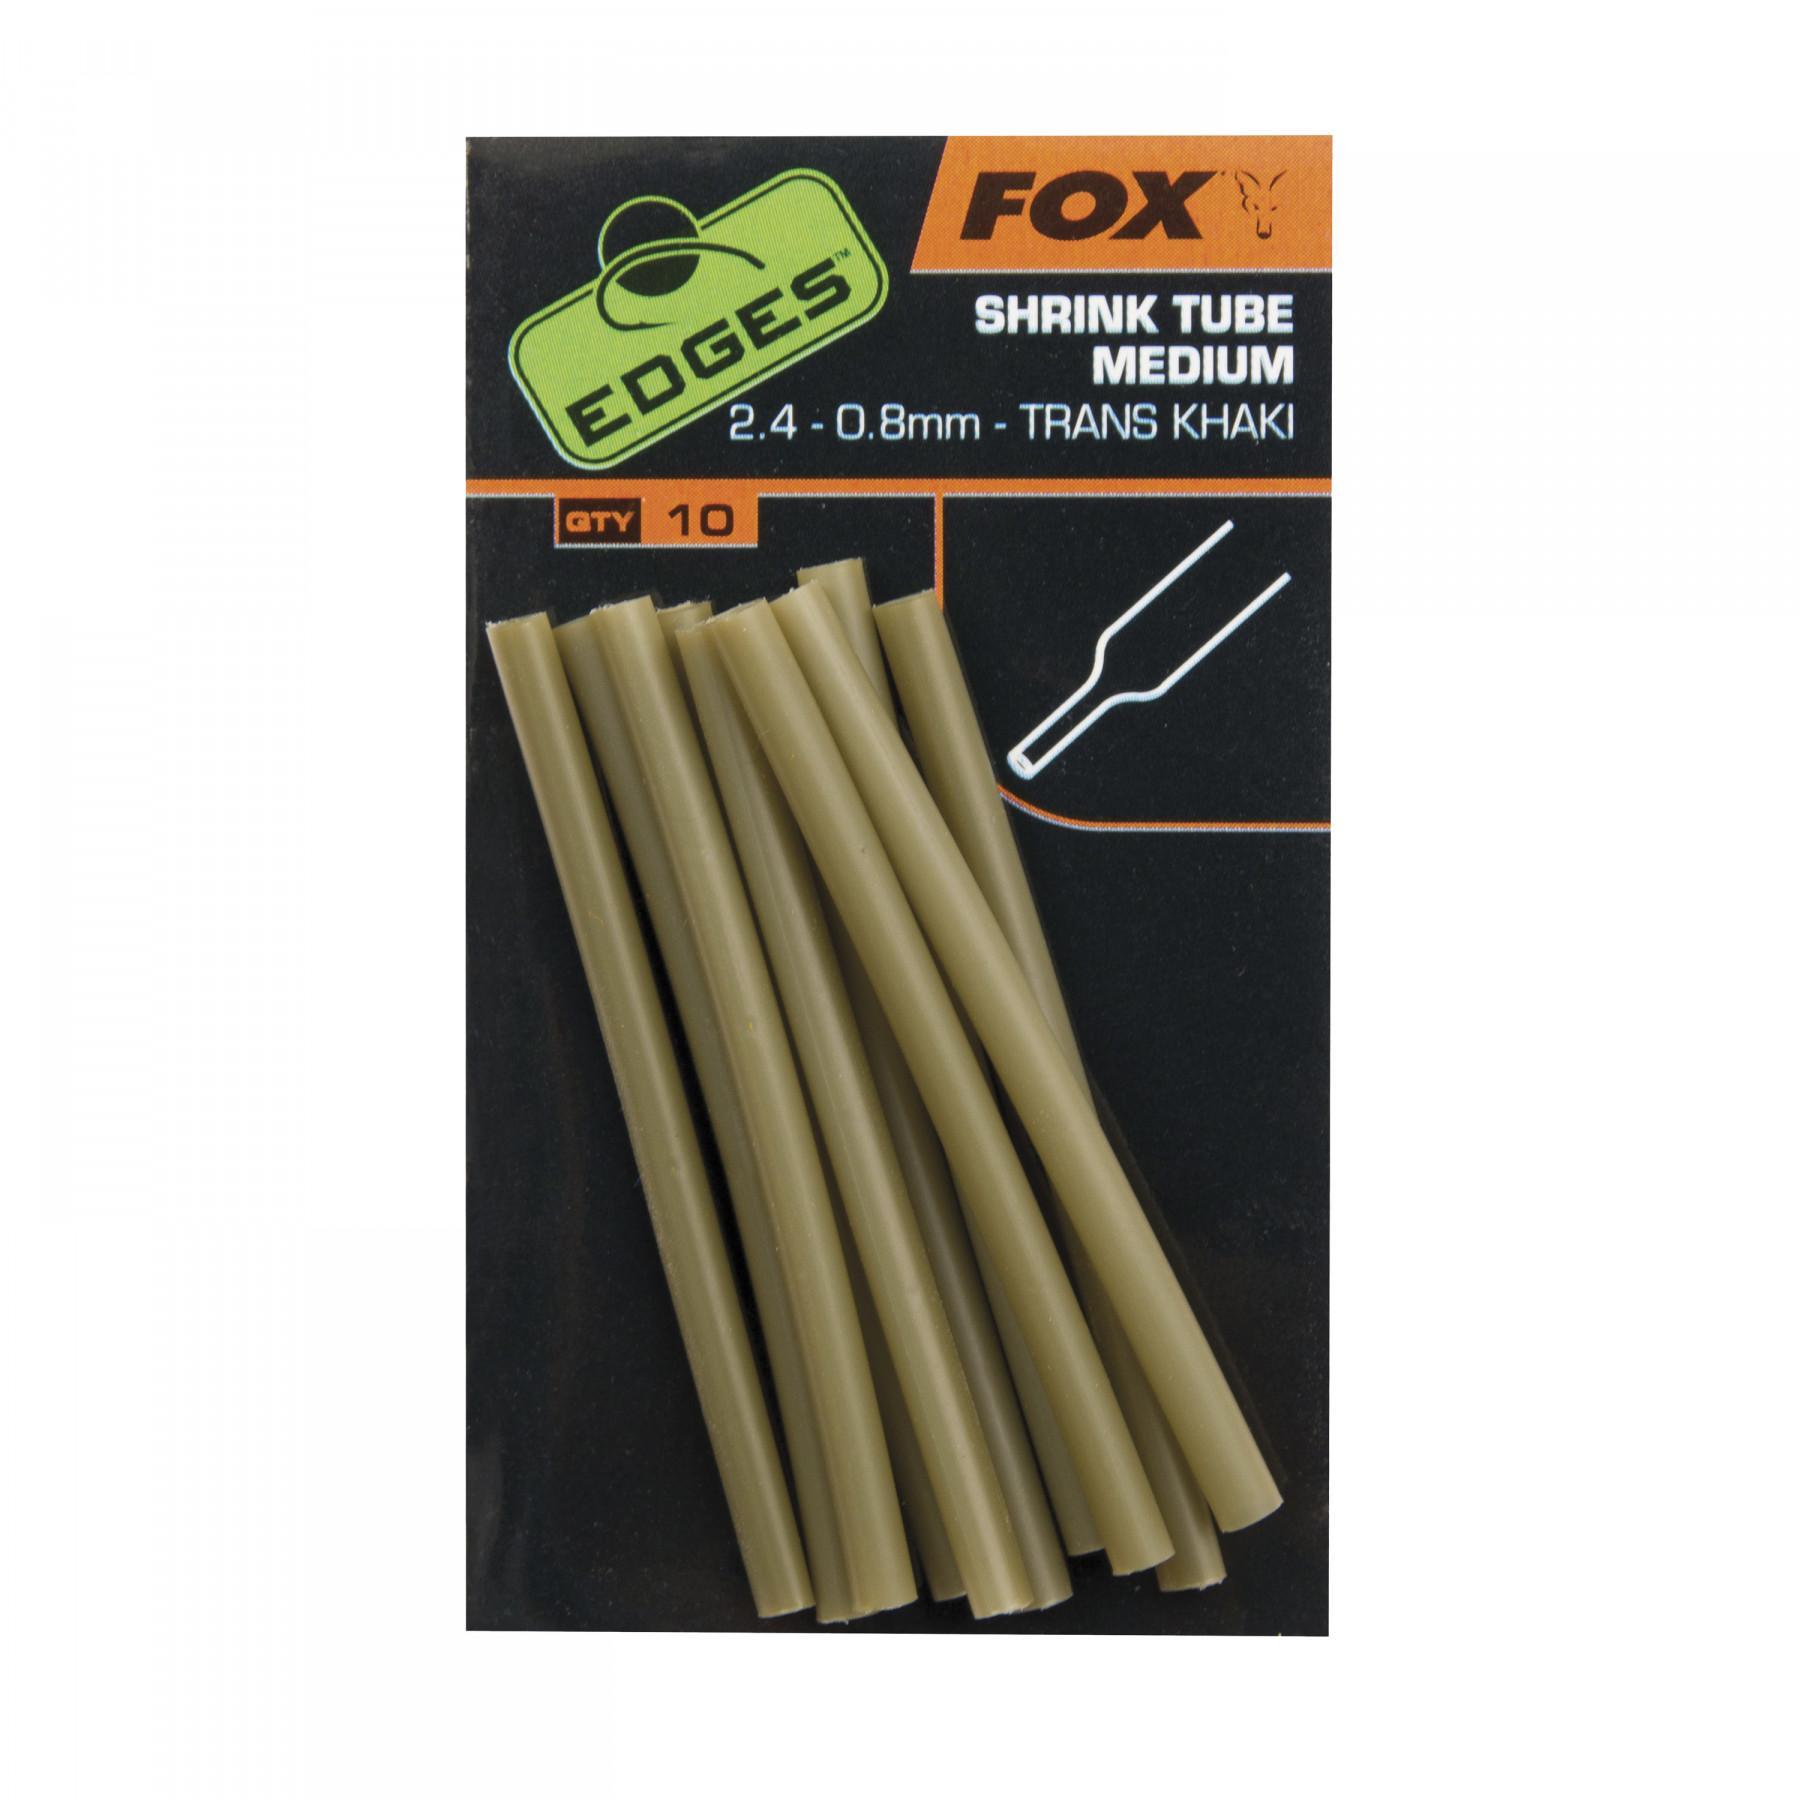 Heat-shrinkable tube Fox 2.4 – 0.8mm Edges